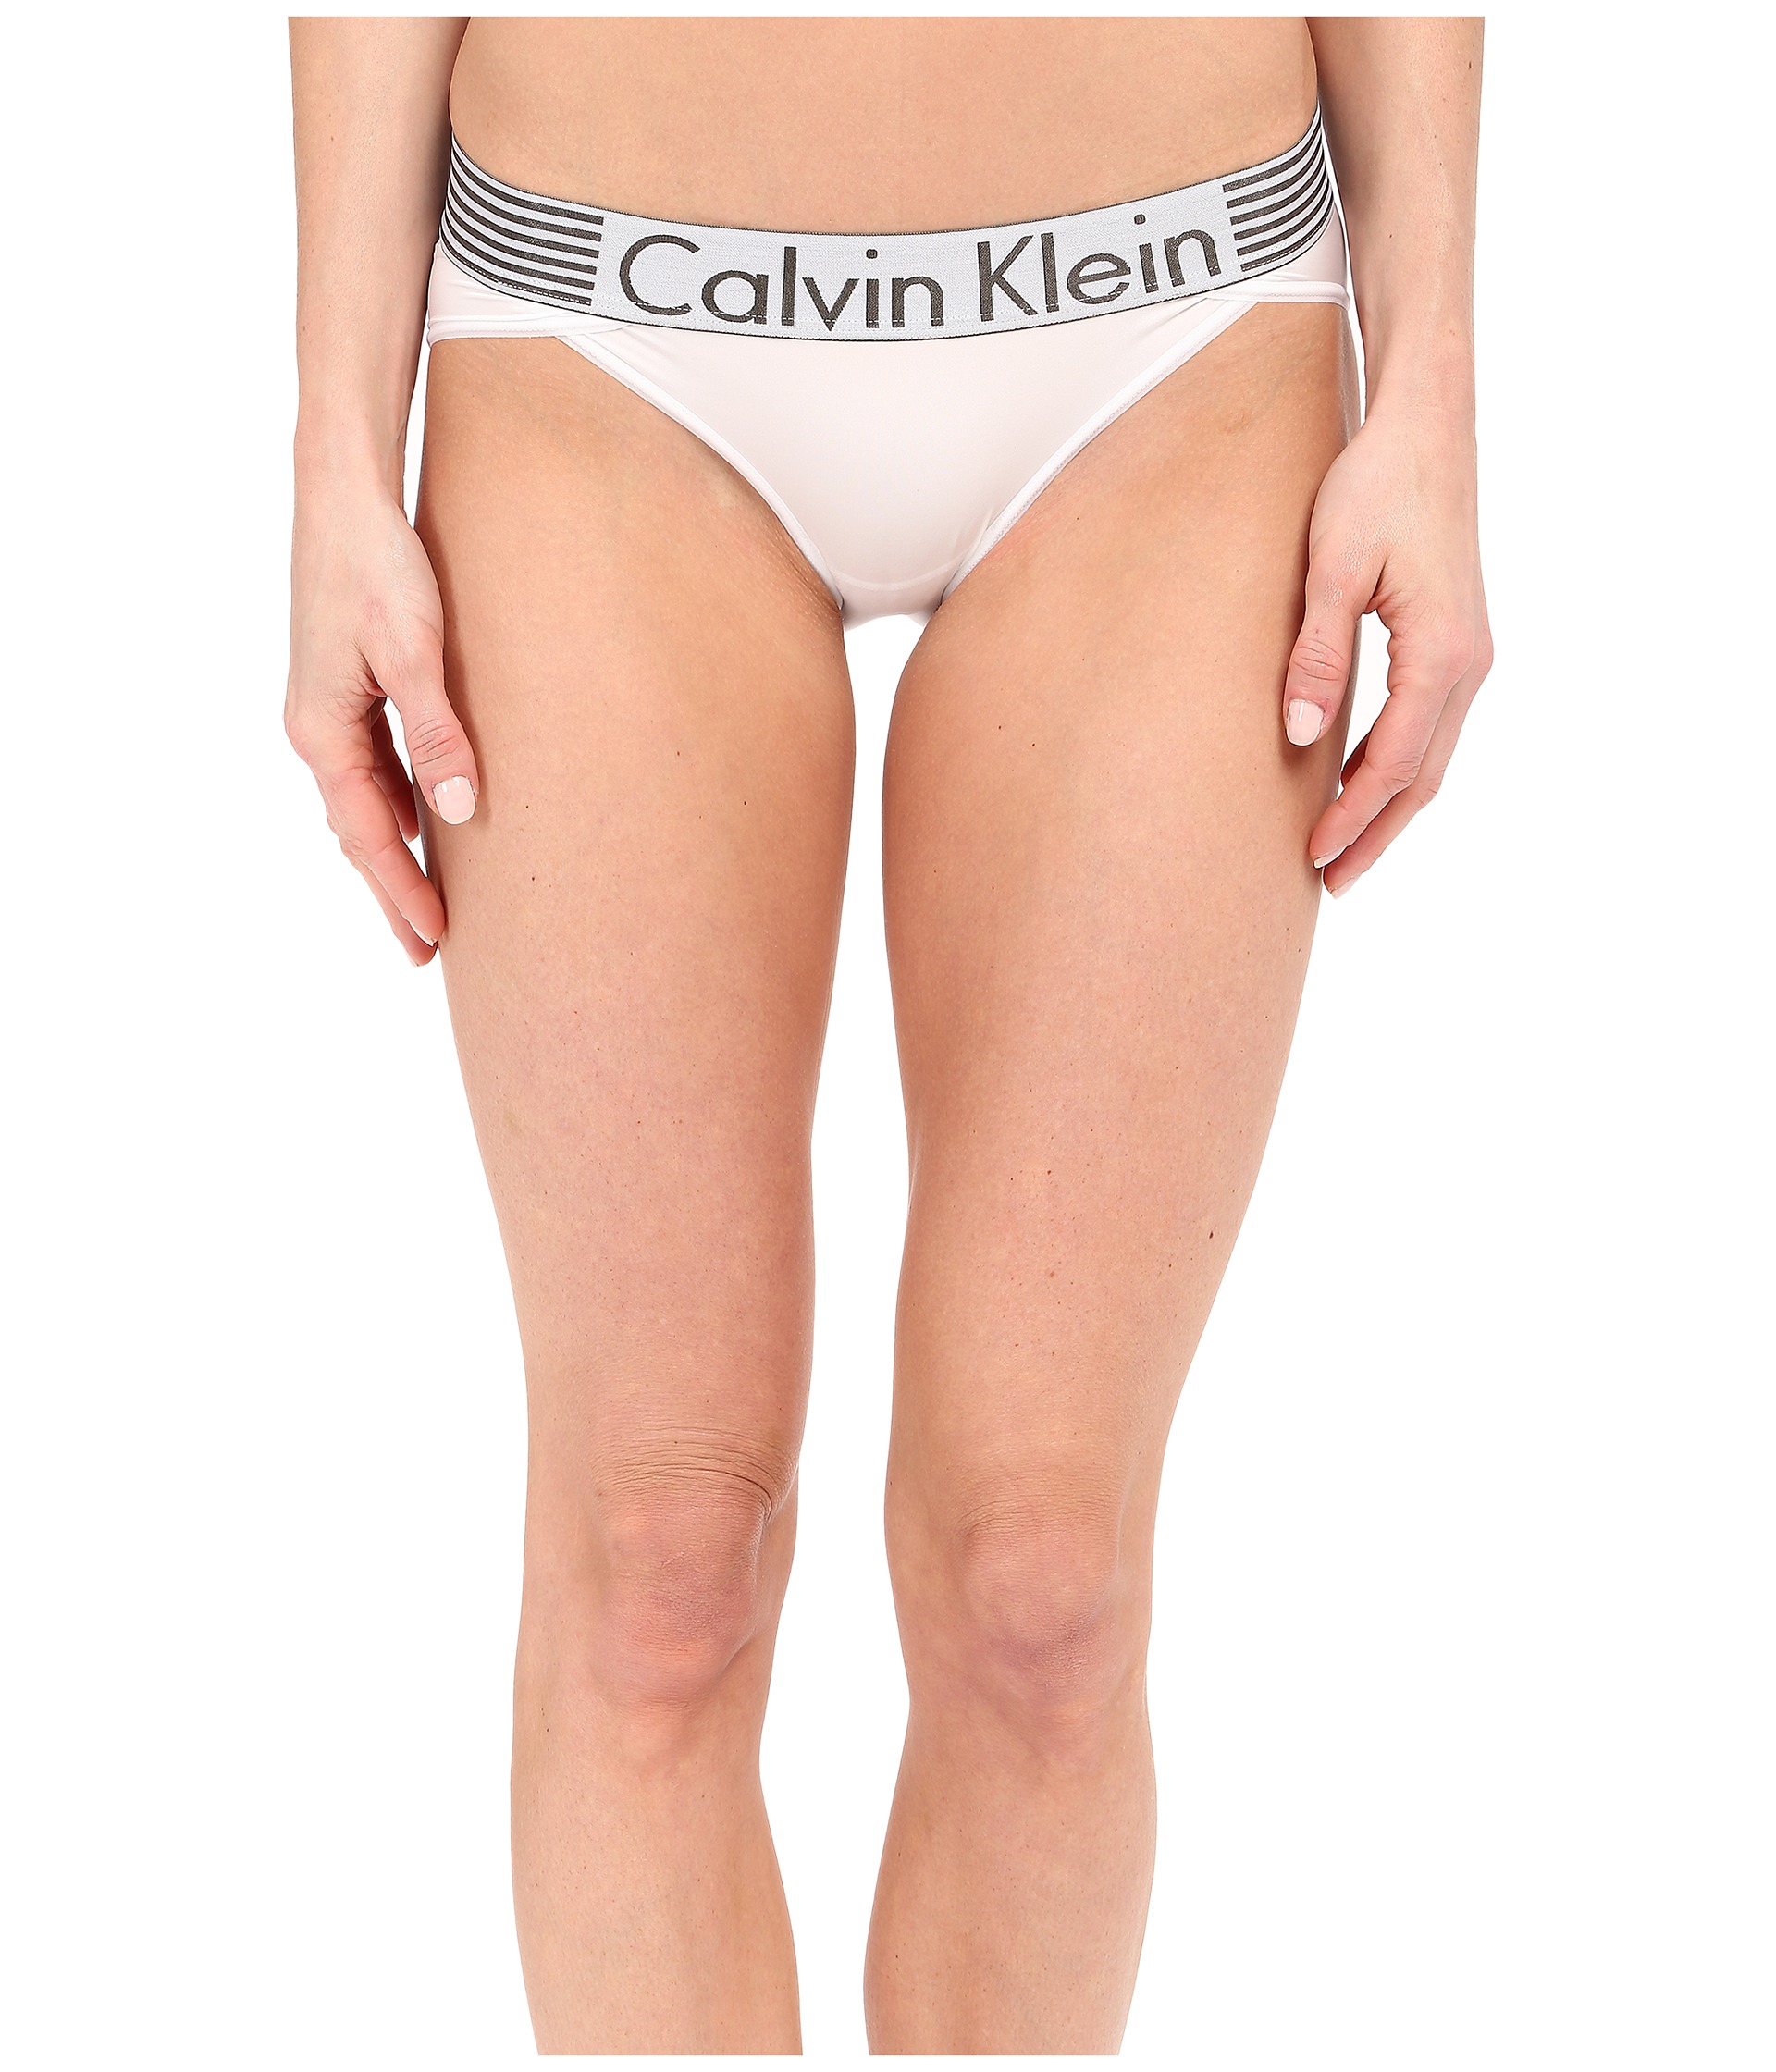 Calvin-Klein-Underwear-Europe-Products - RPA Group